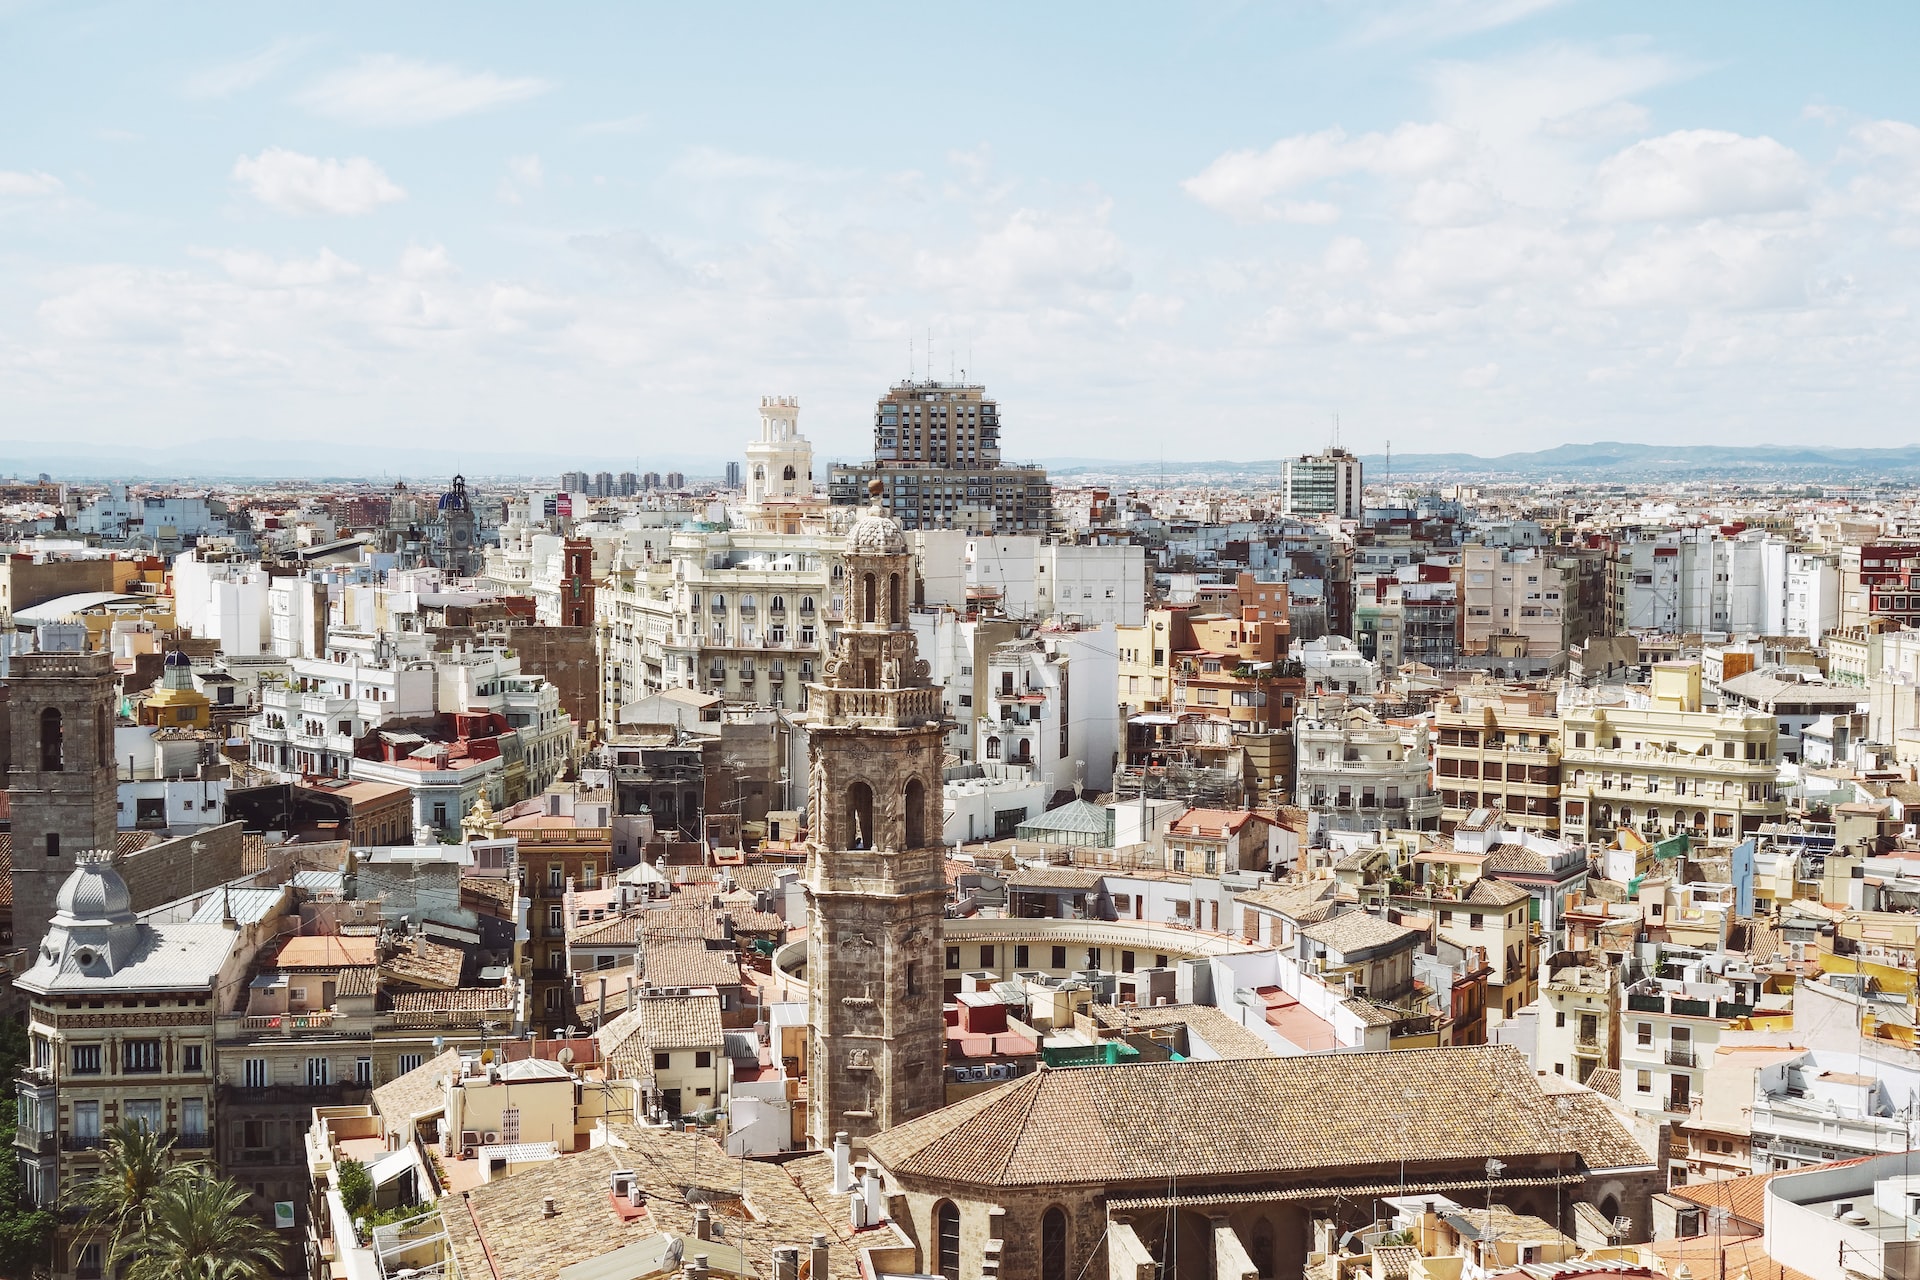 The diverse cityscape of Valencia.